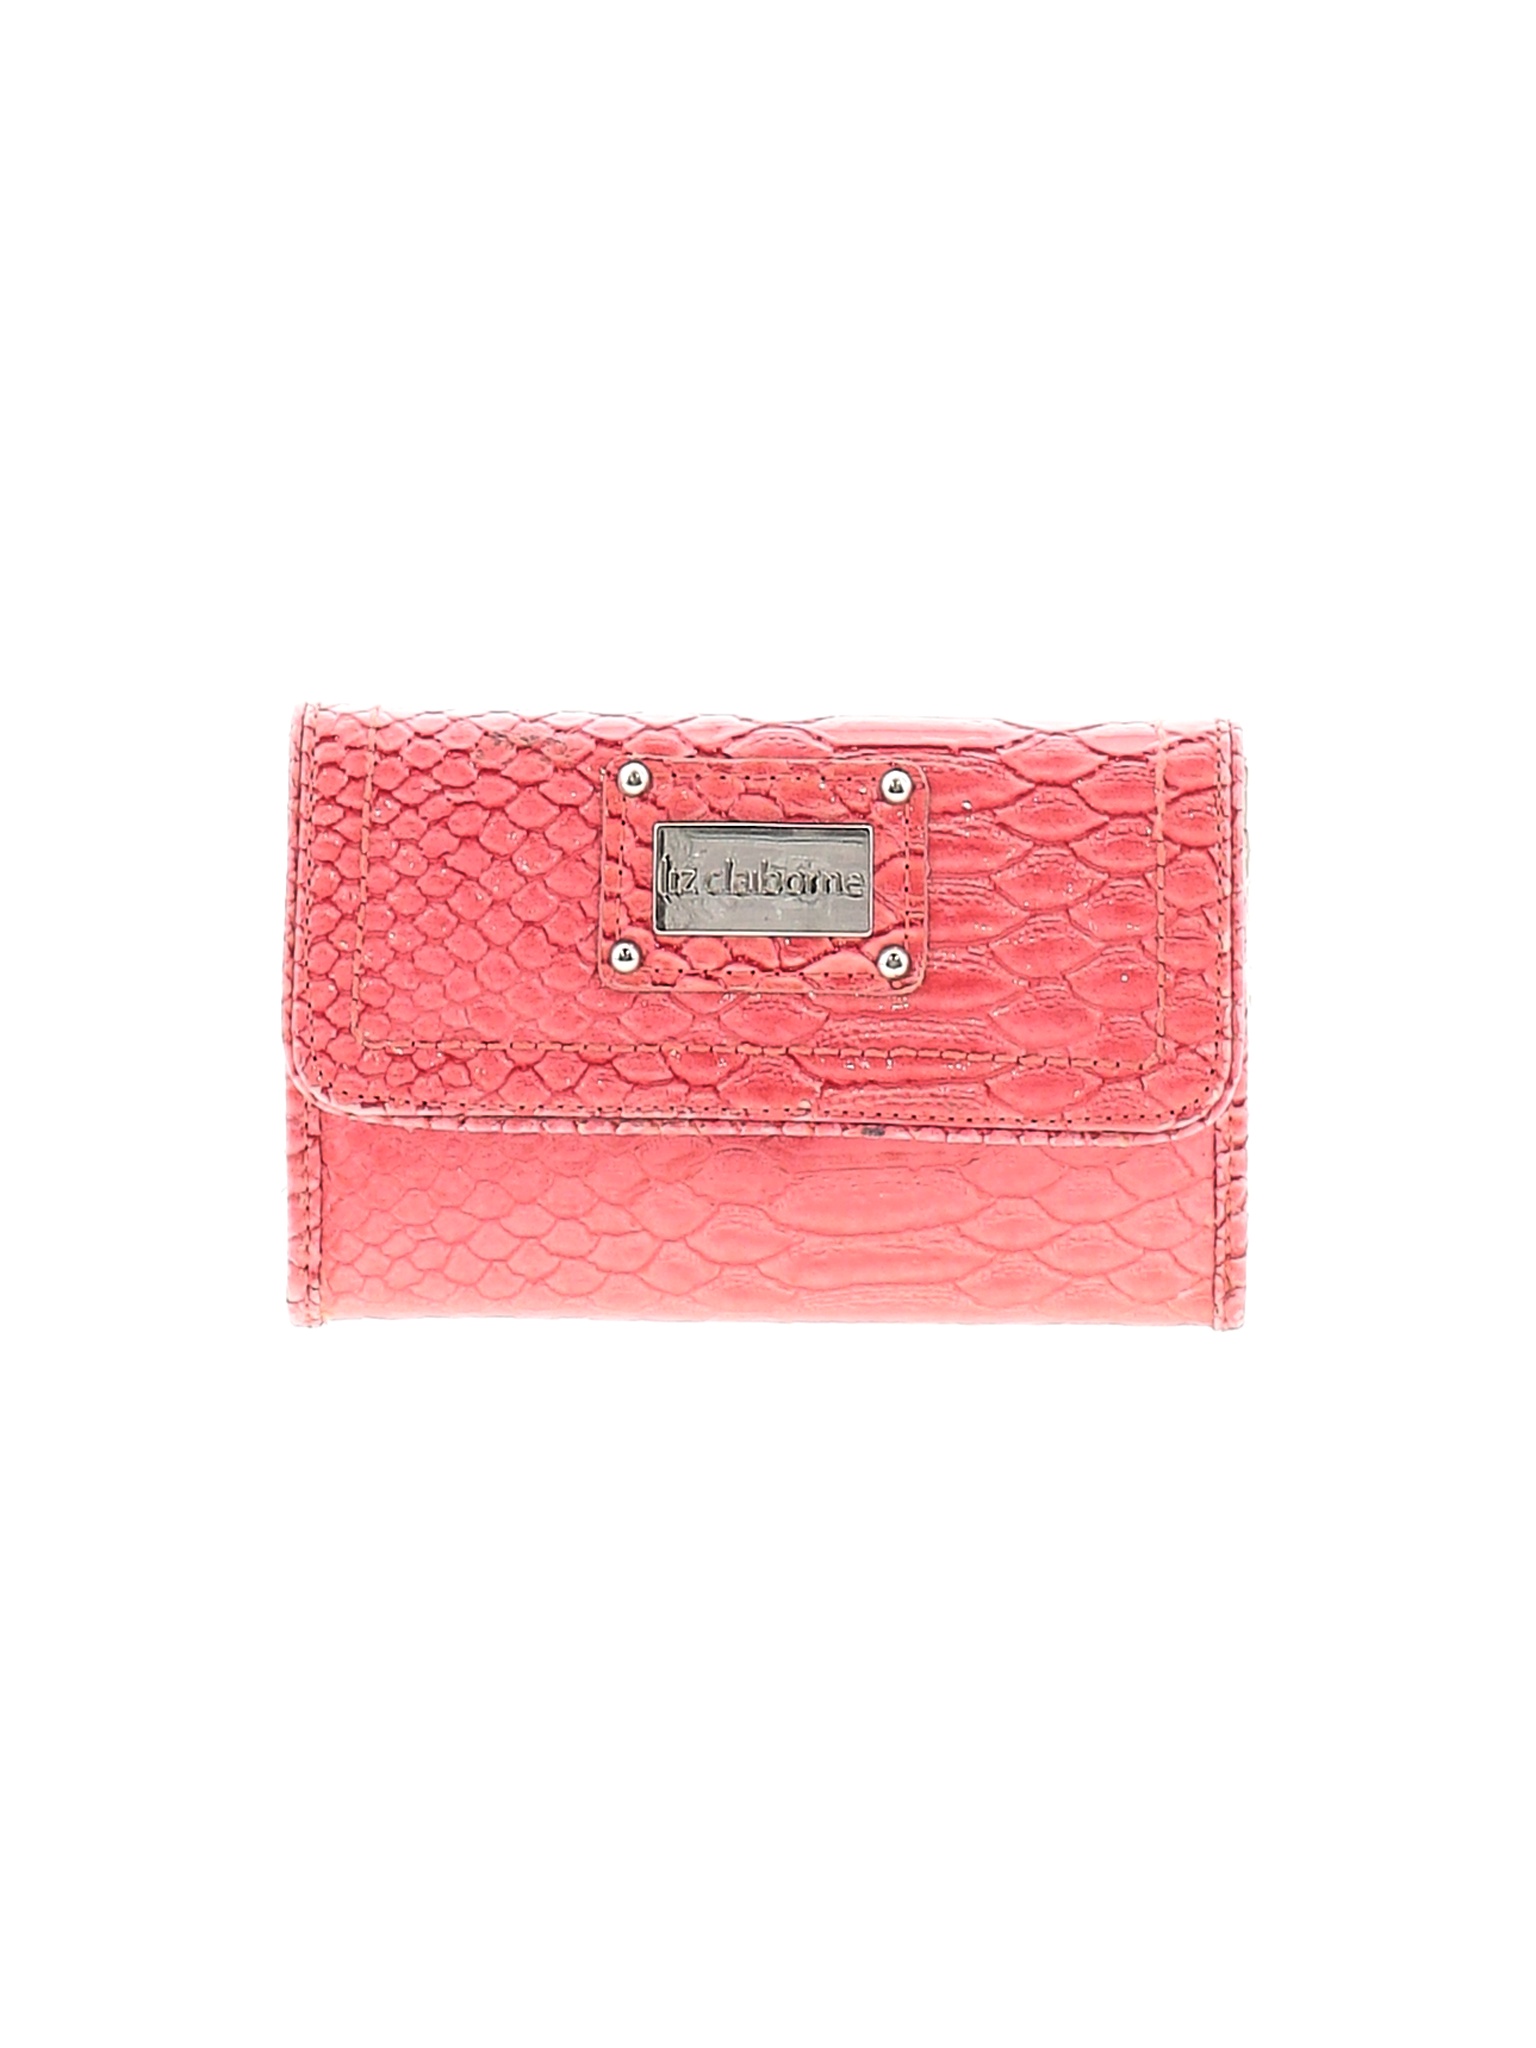 Liz Claiborne Women Pink Wallet One Size | eBay